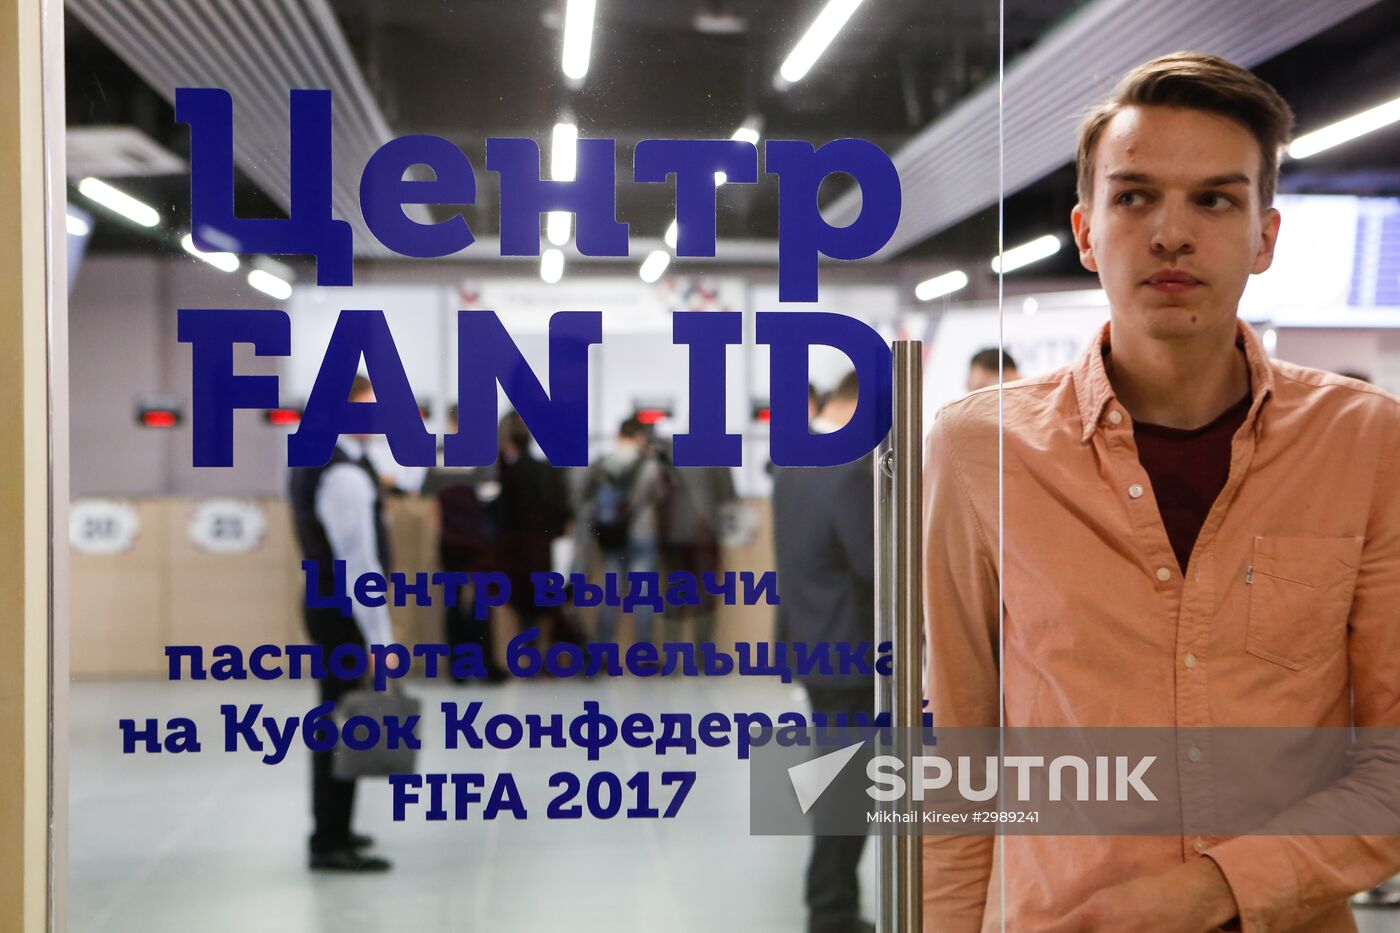 First 2018 FIFA World Cup Fan Passport Center opens